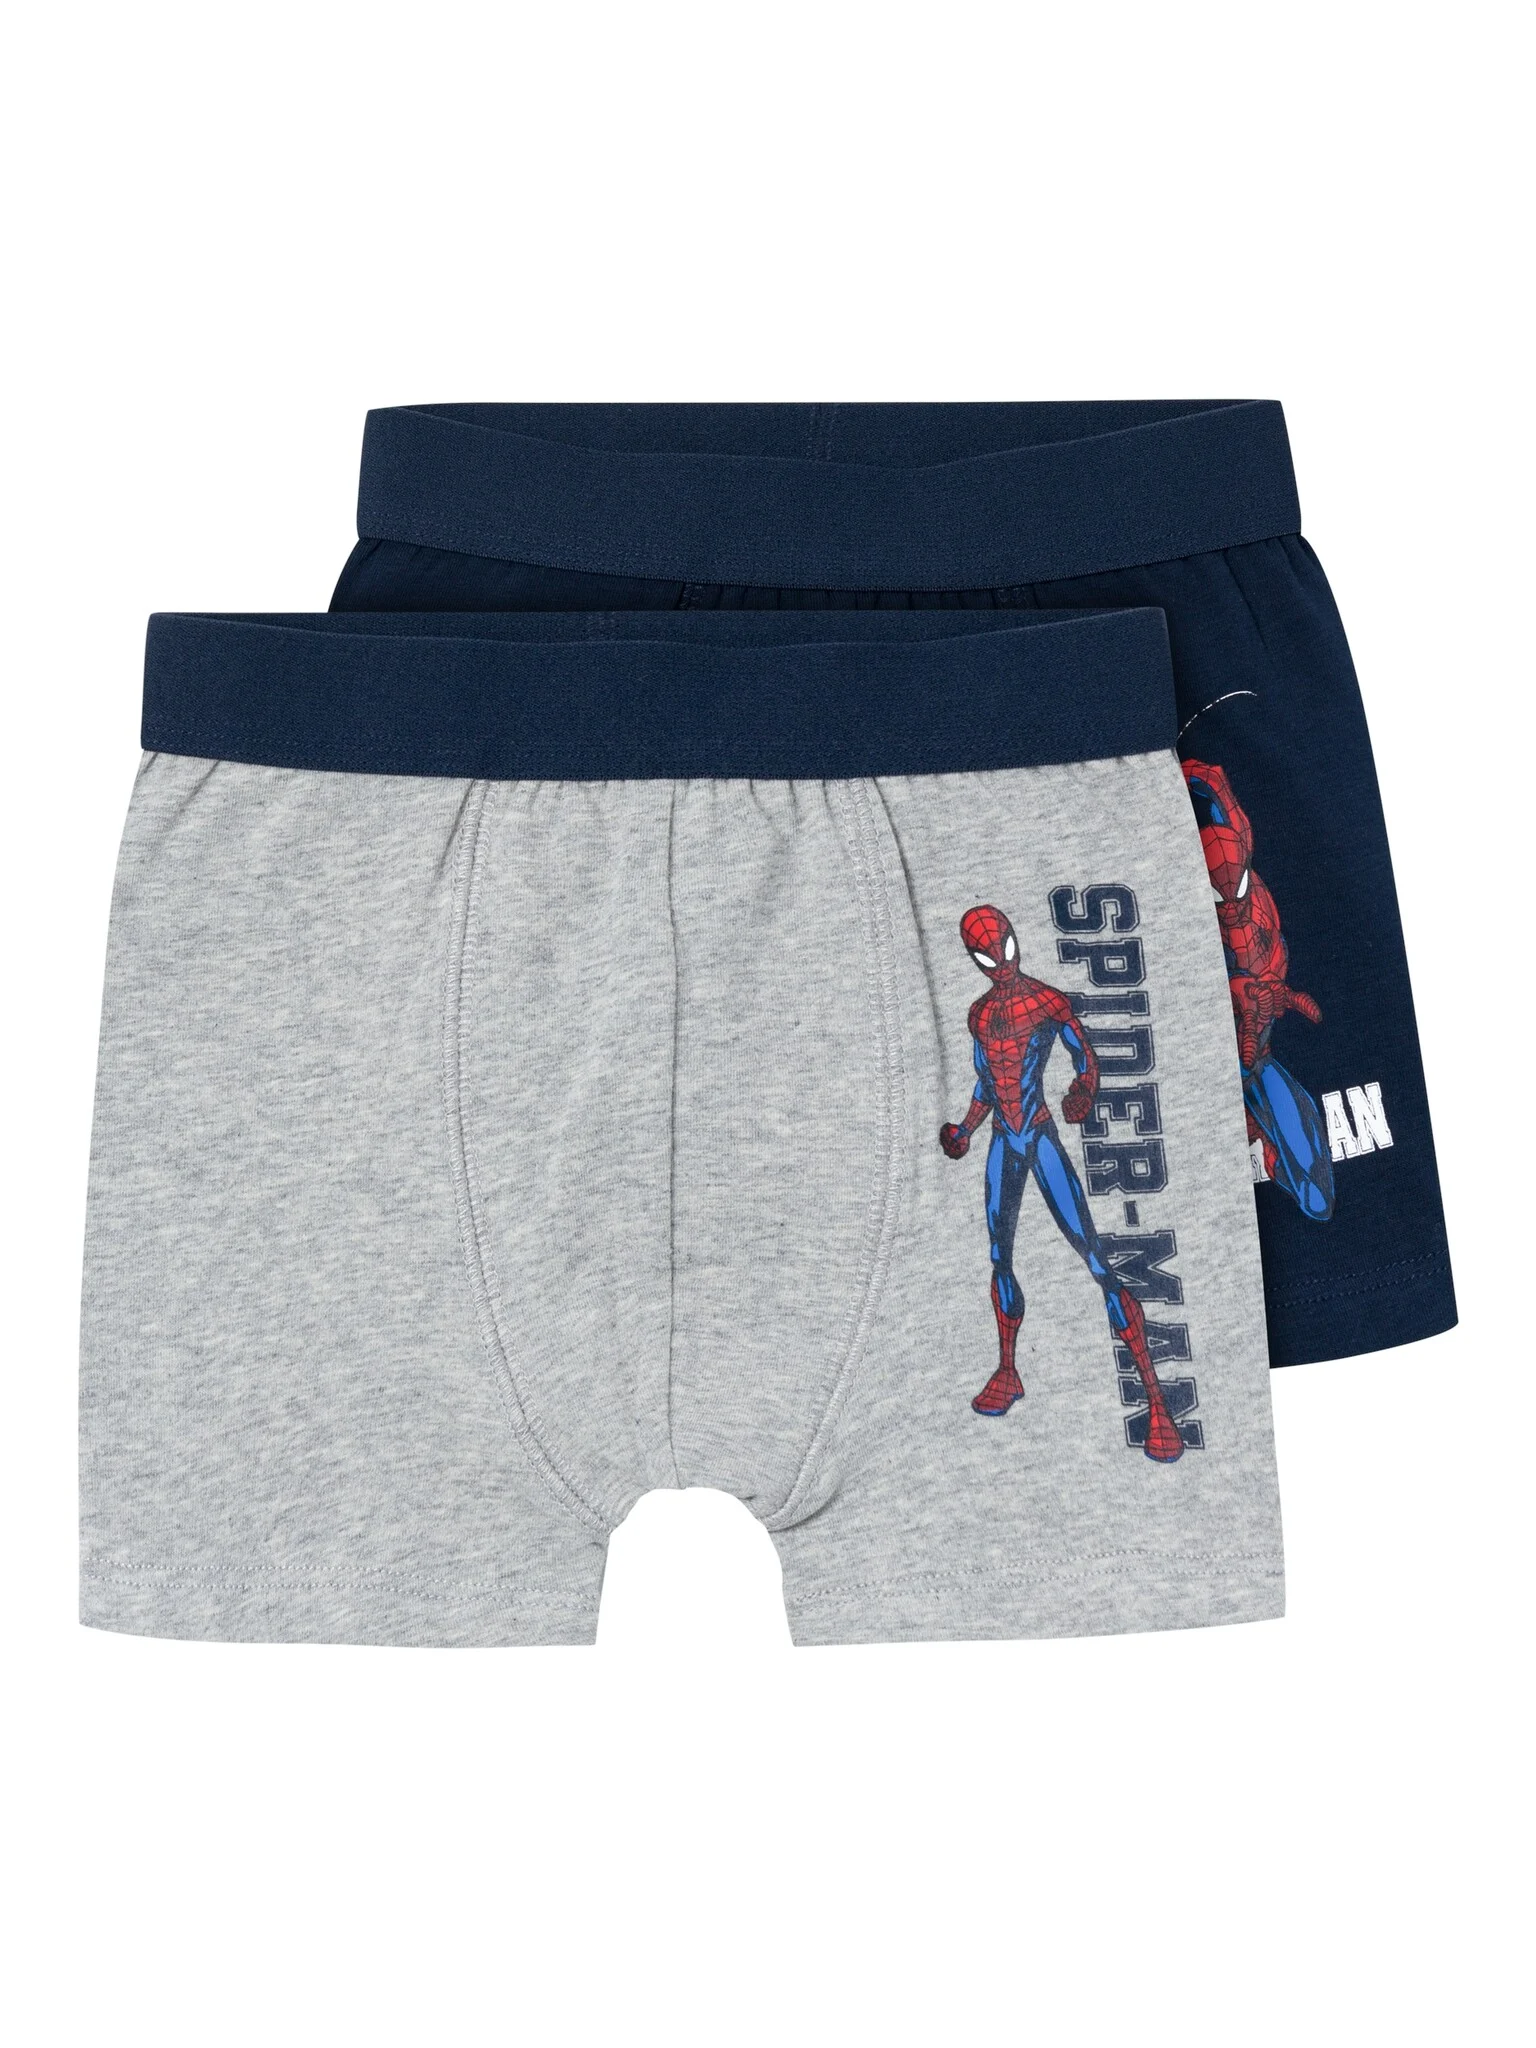 Afbeelding van Name It Jongens boxershorts spiderman blauw/grijs 2-pack